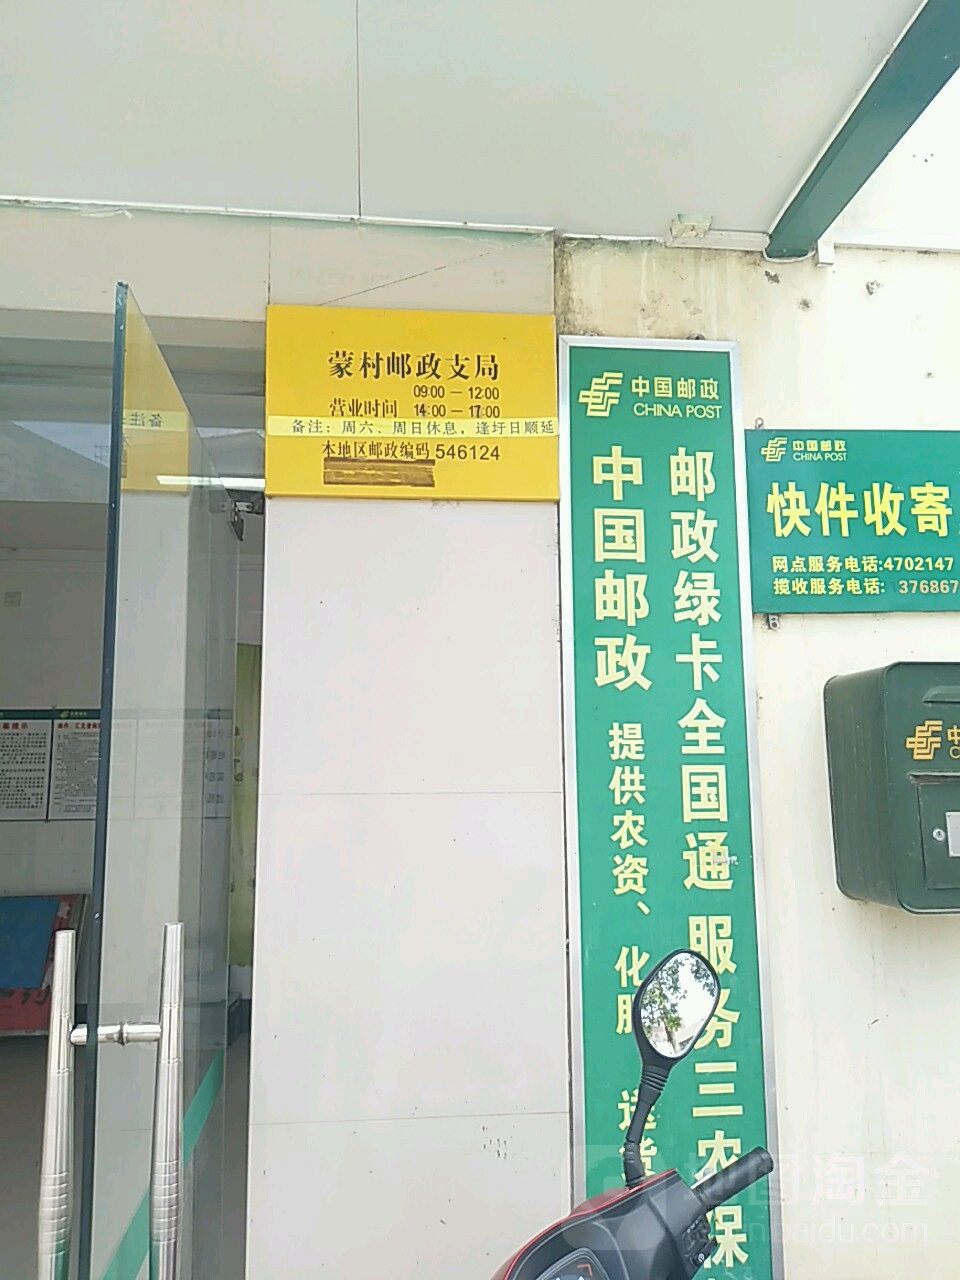 中国邮政(蒙村邮政支局)